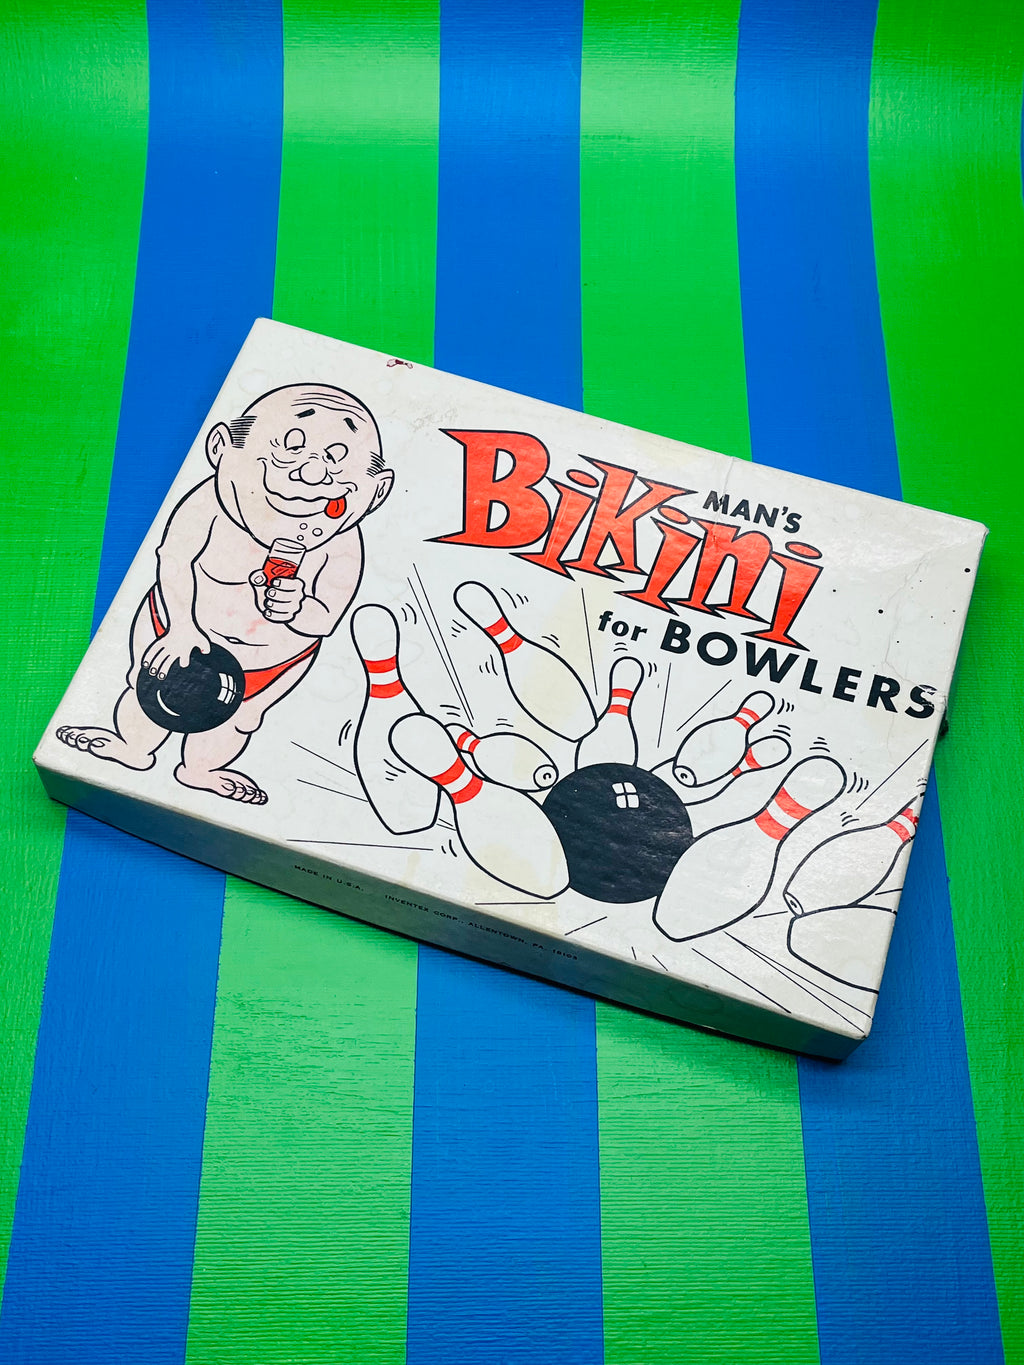 Man’s Bikini for Bowlers